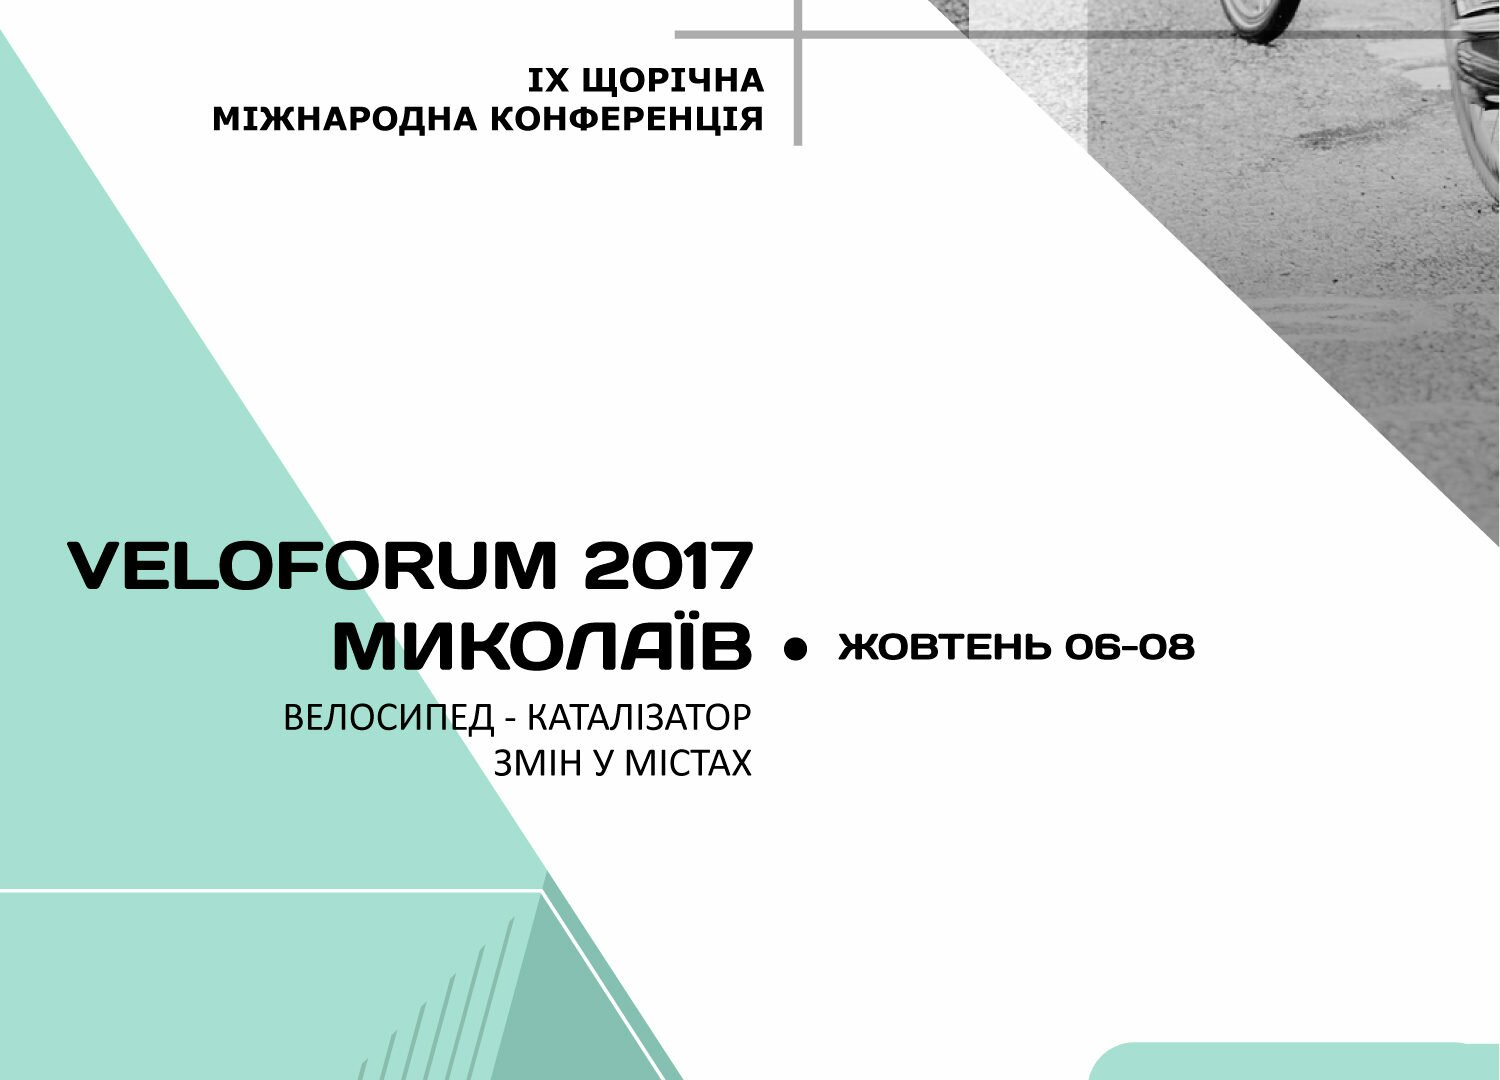 Veloforum 2017 Program is published